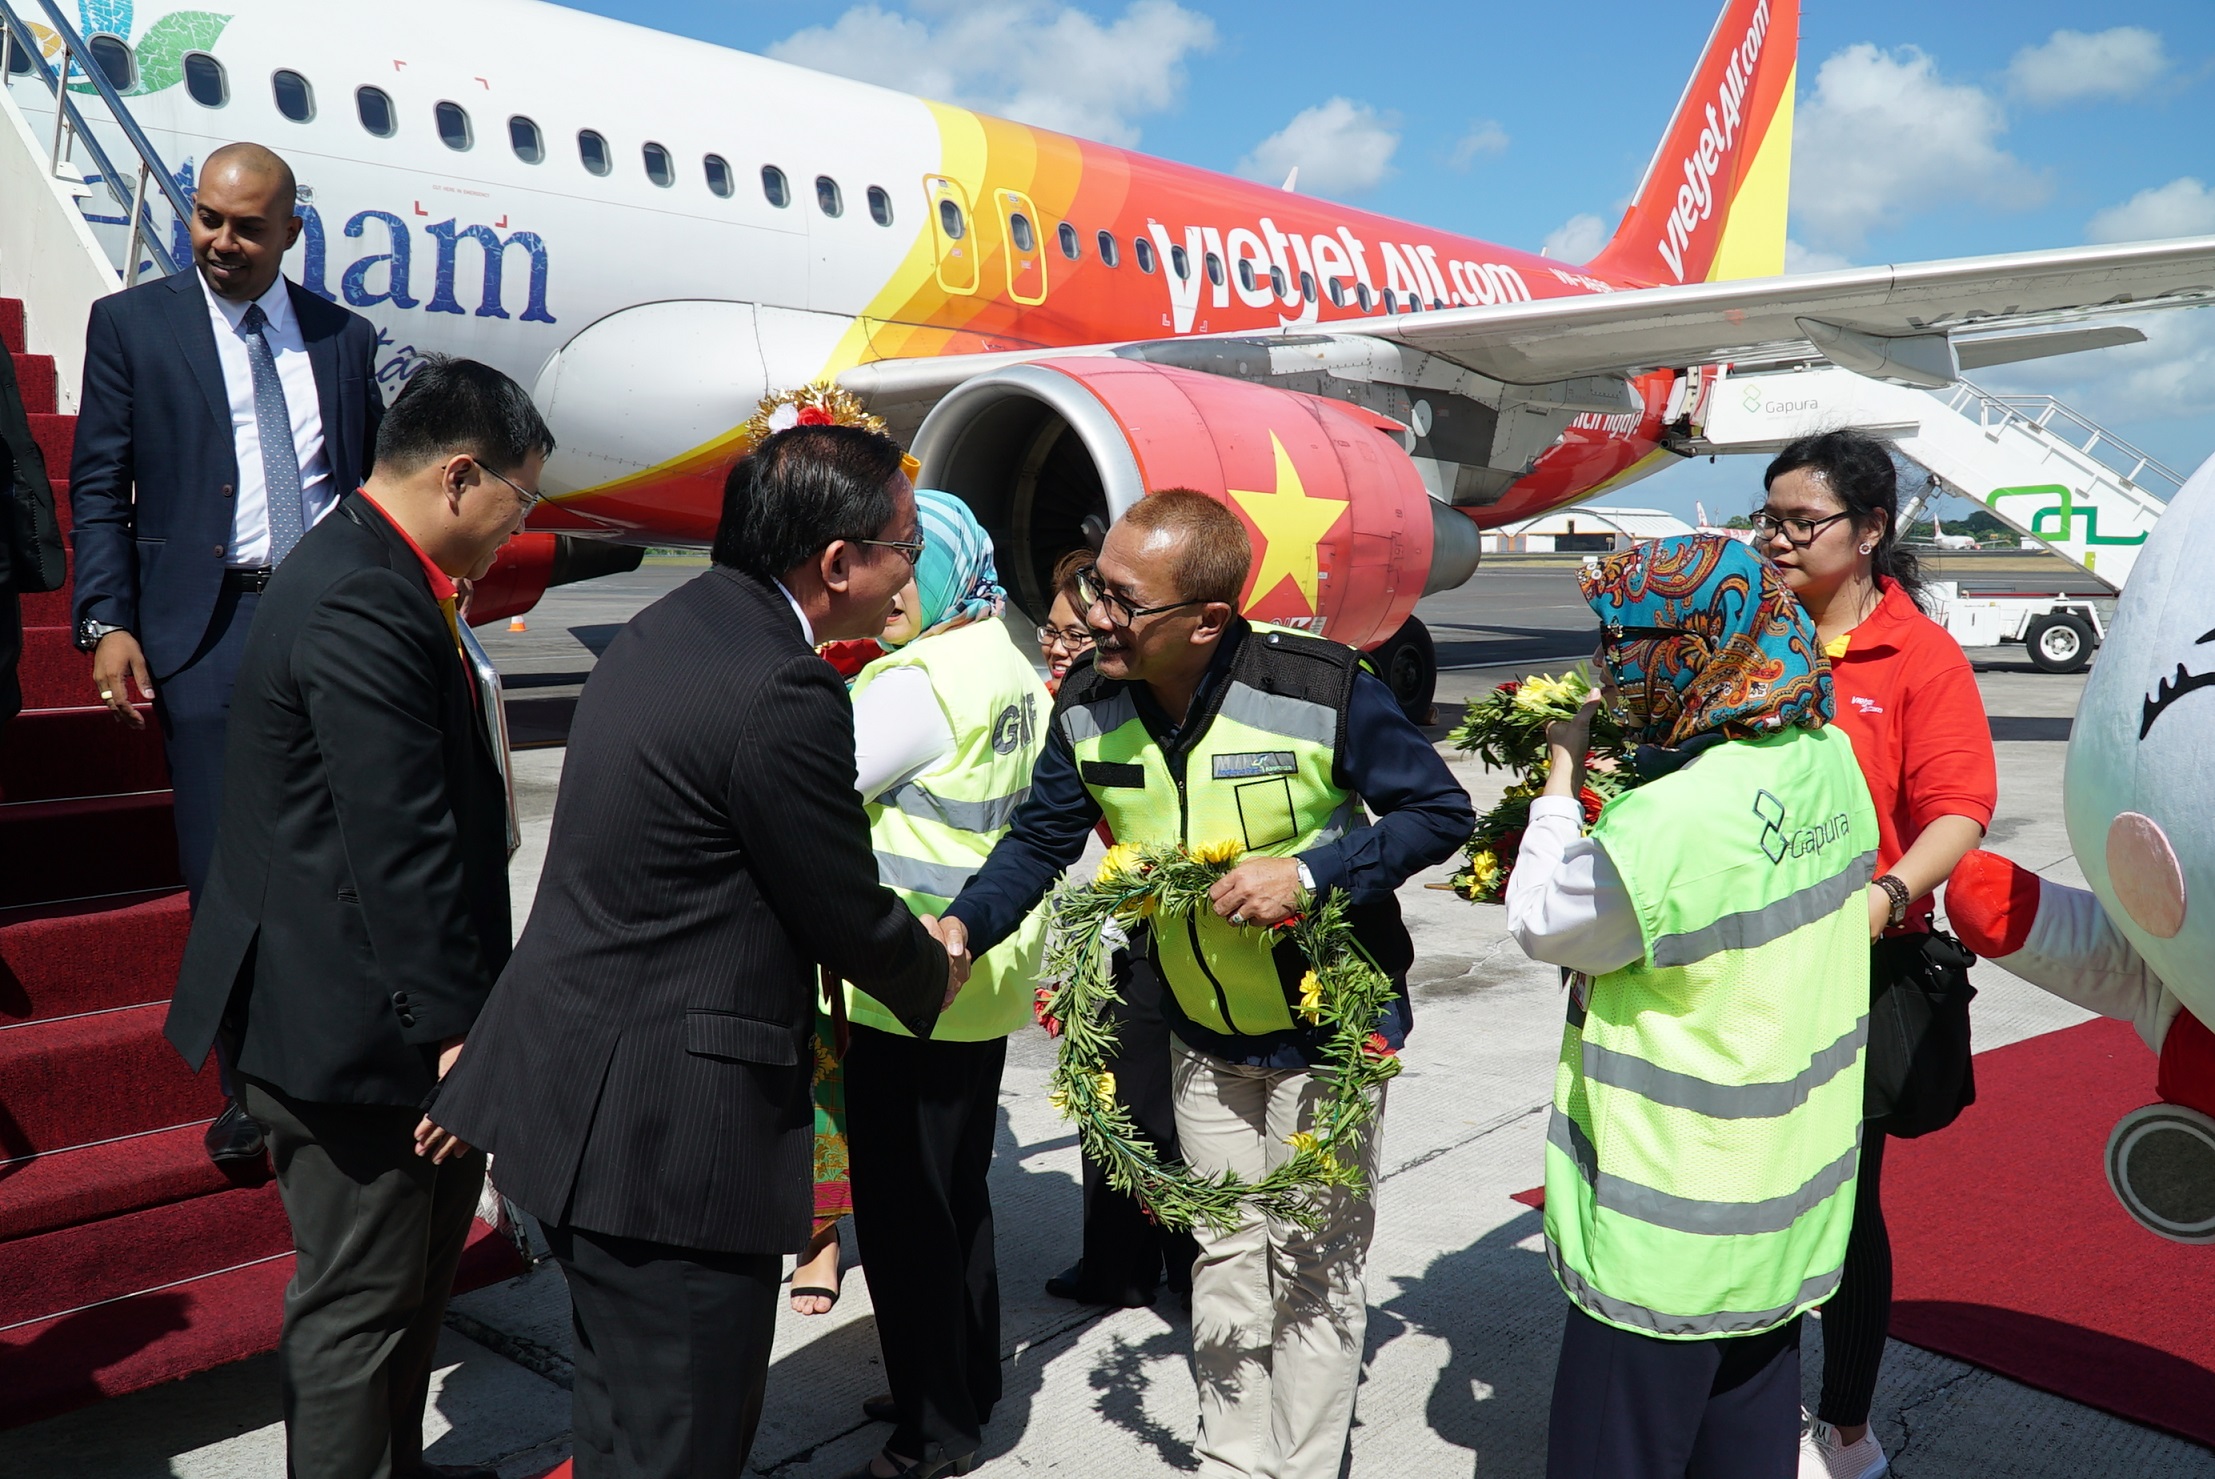 Các đại sứ và Tổng lãnh sự các nước ASEAN tại Việt Nam bay cùng Vietjet trên chuyến bay đầu tiên đến Bali